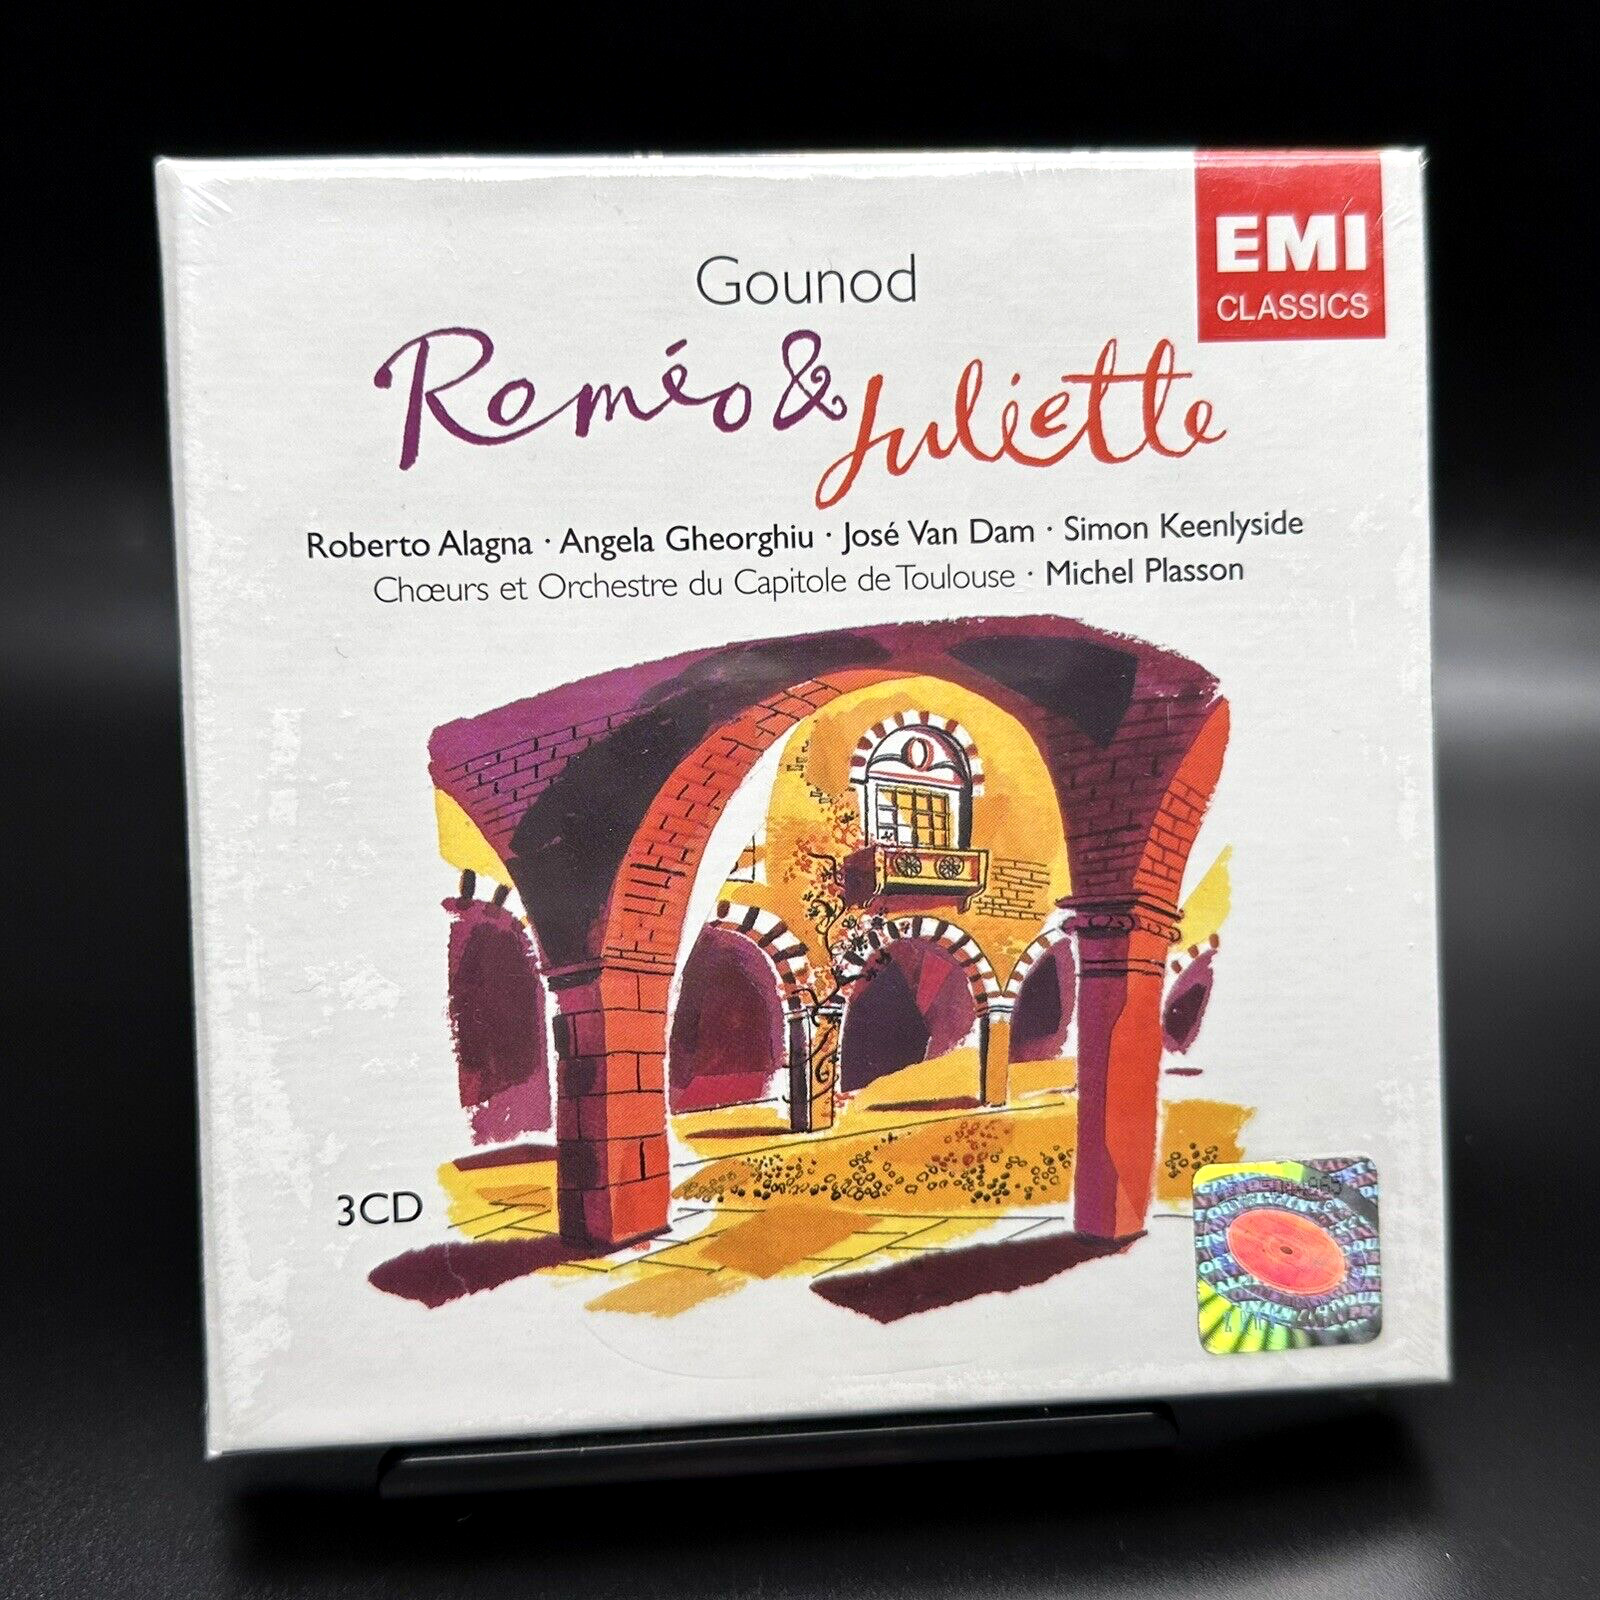 Gounod Romeo & Juliette, Plasson Alagna Gheorghiu [EMI 3 CD Box Set] SEALED